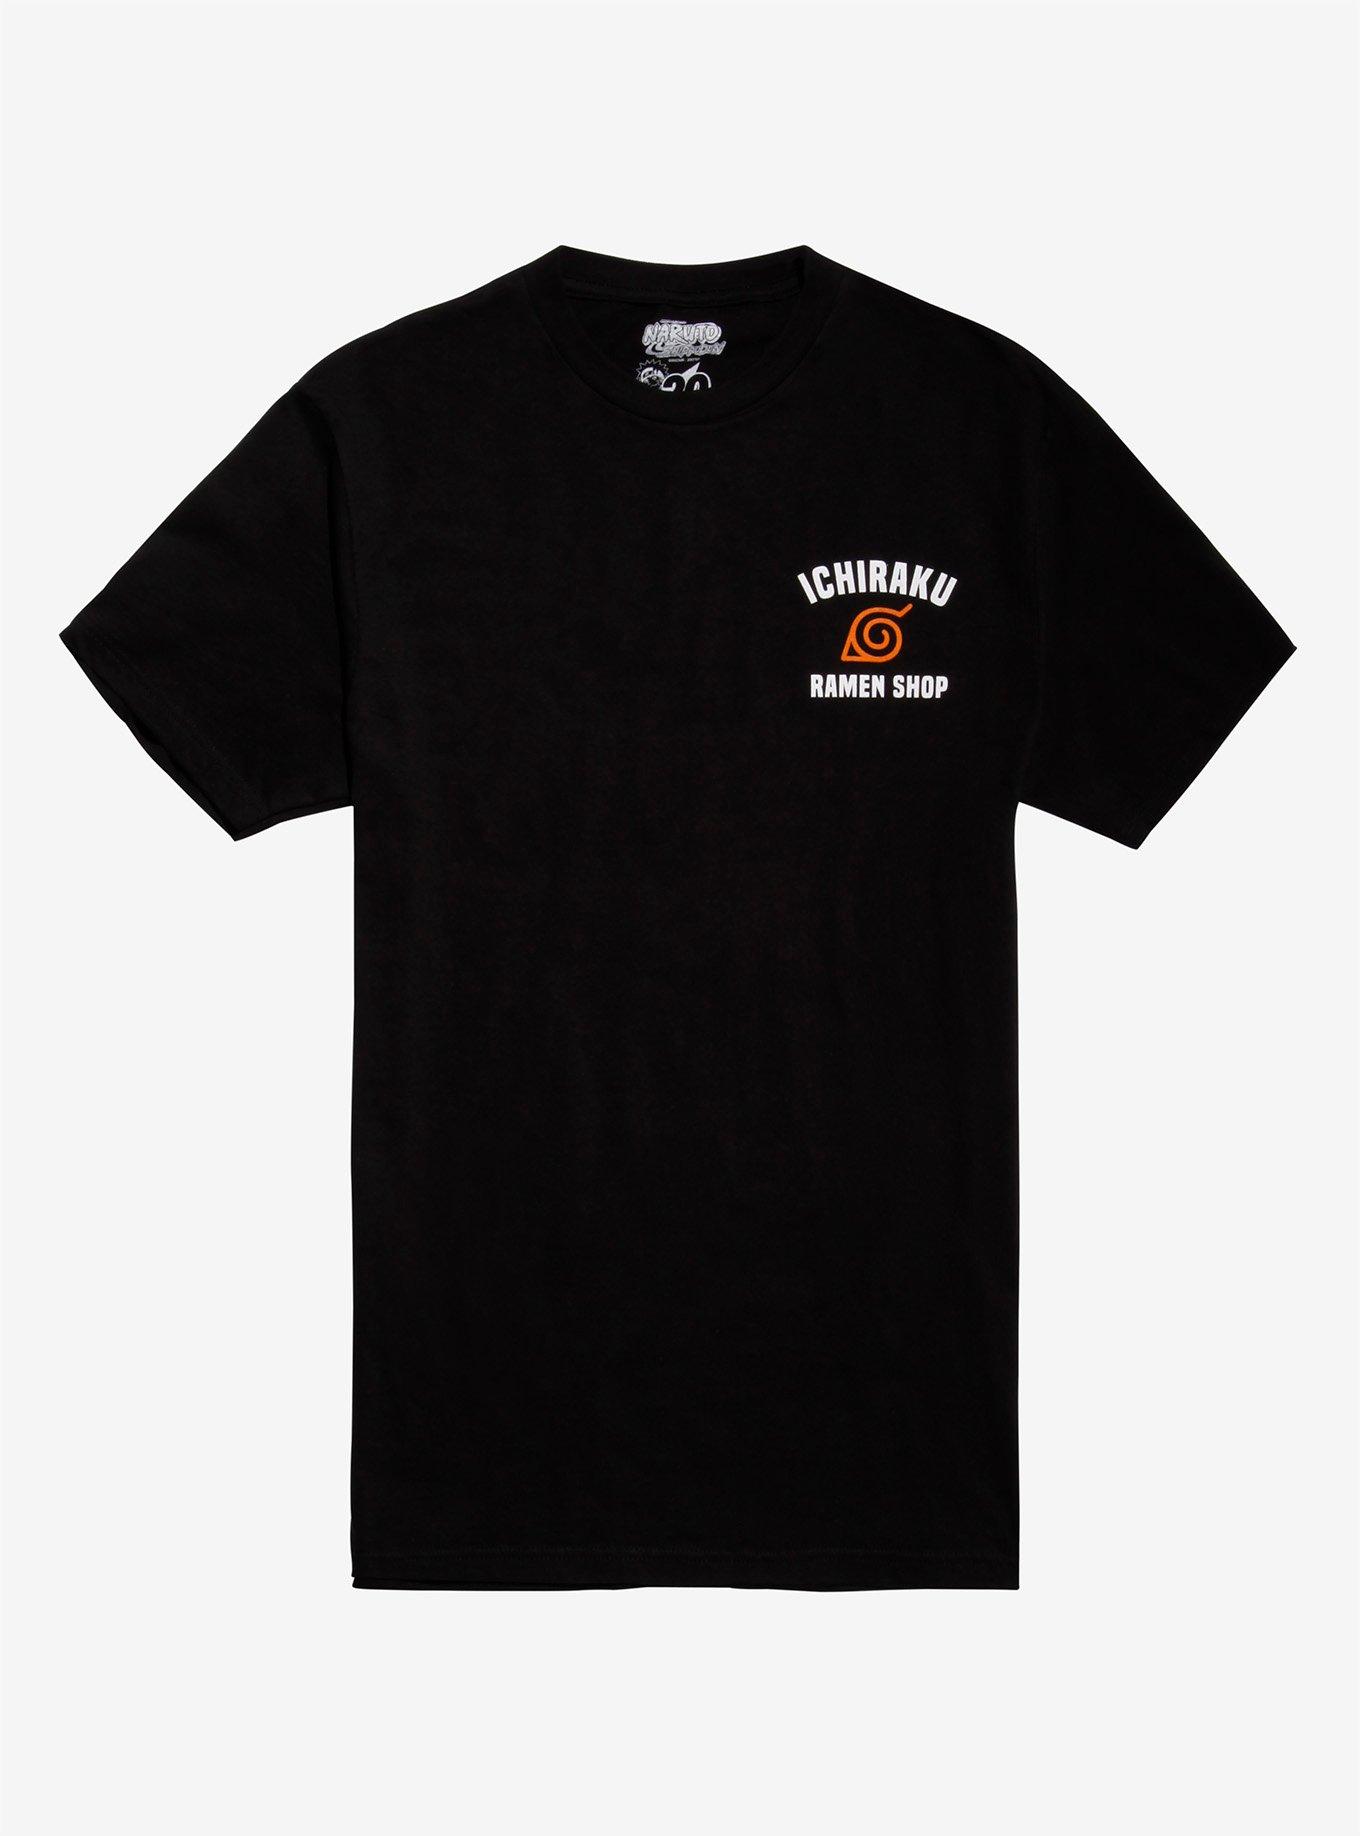 Naruto Shippuden Ichiraku Ramen Shop T-Shirt, BLACK, hi-res